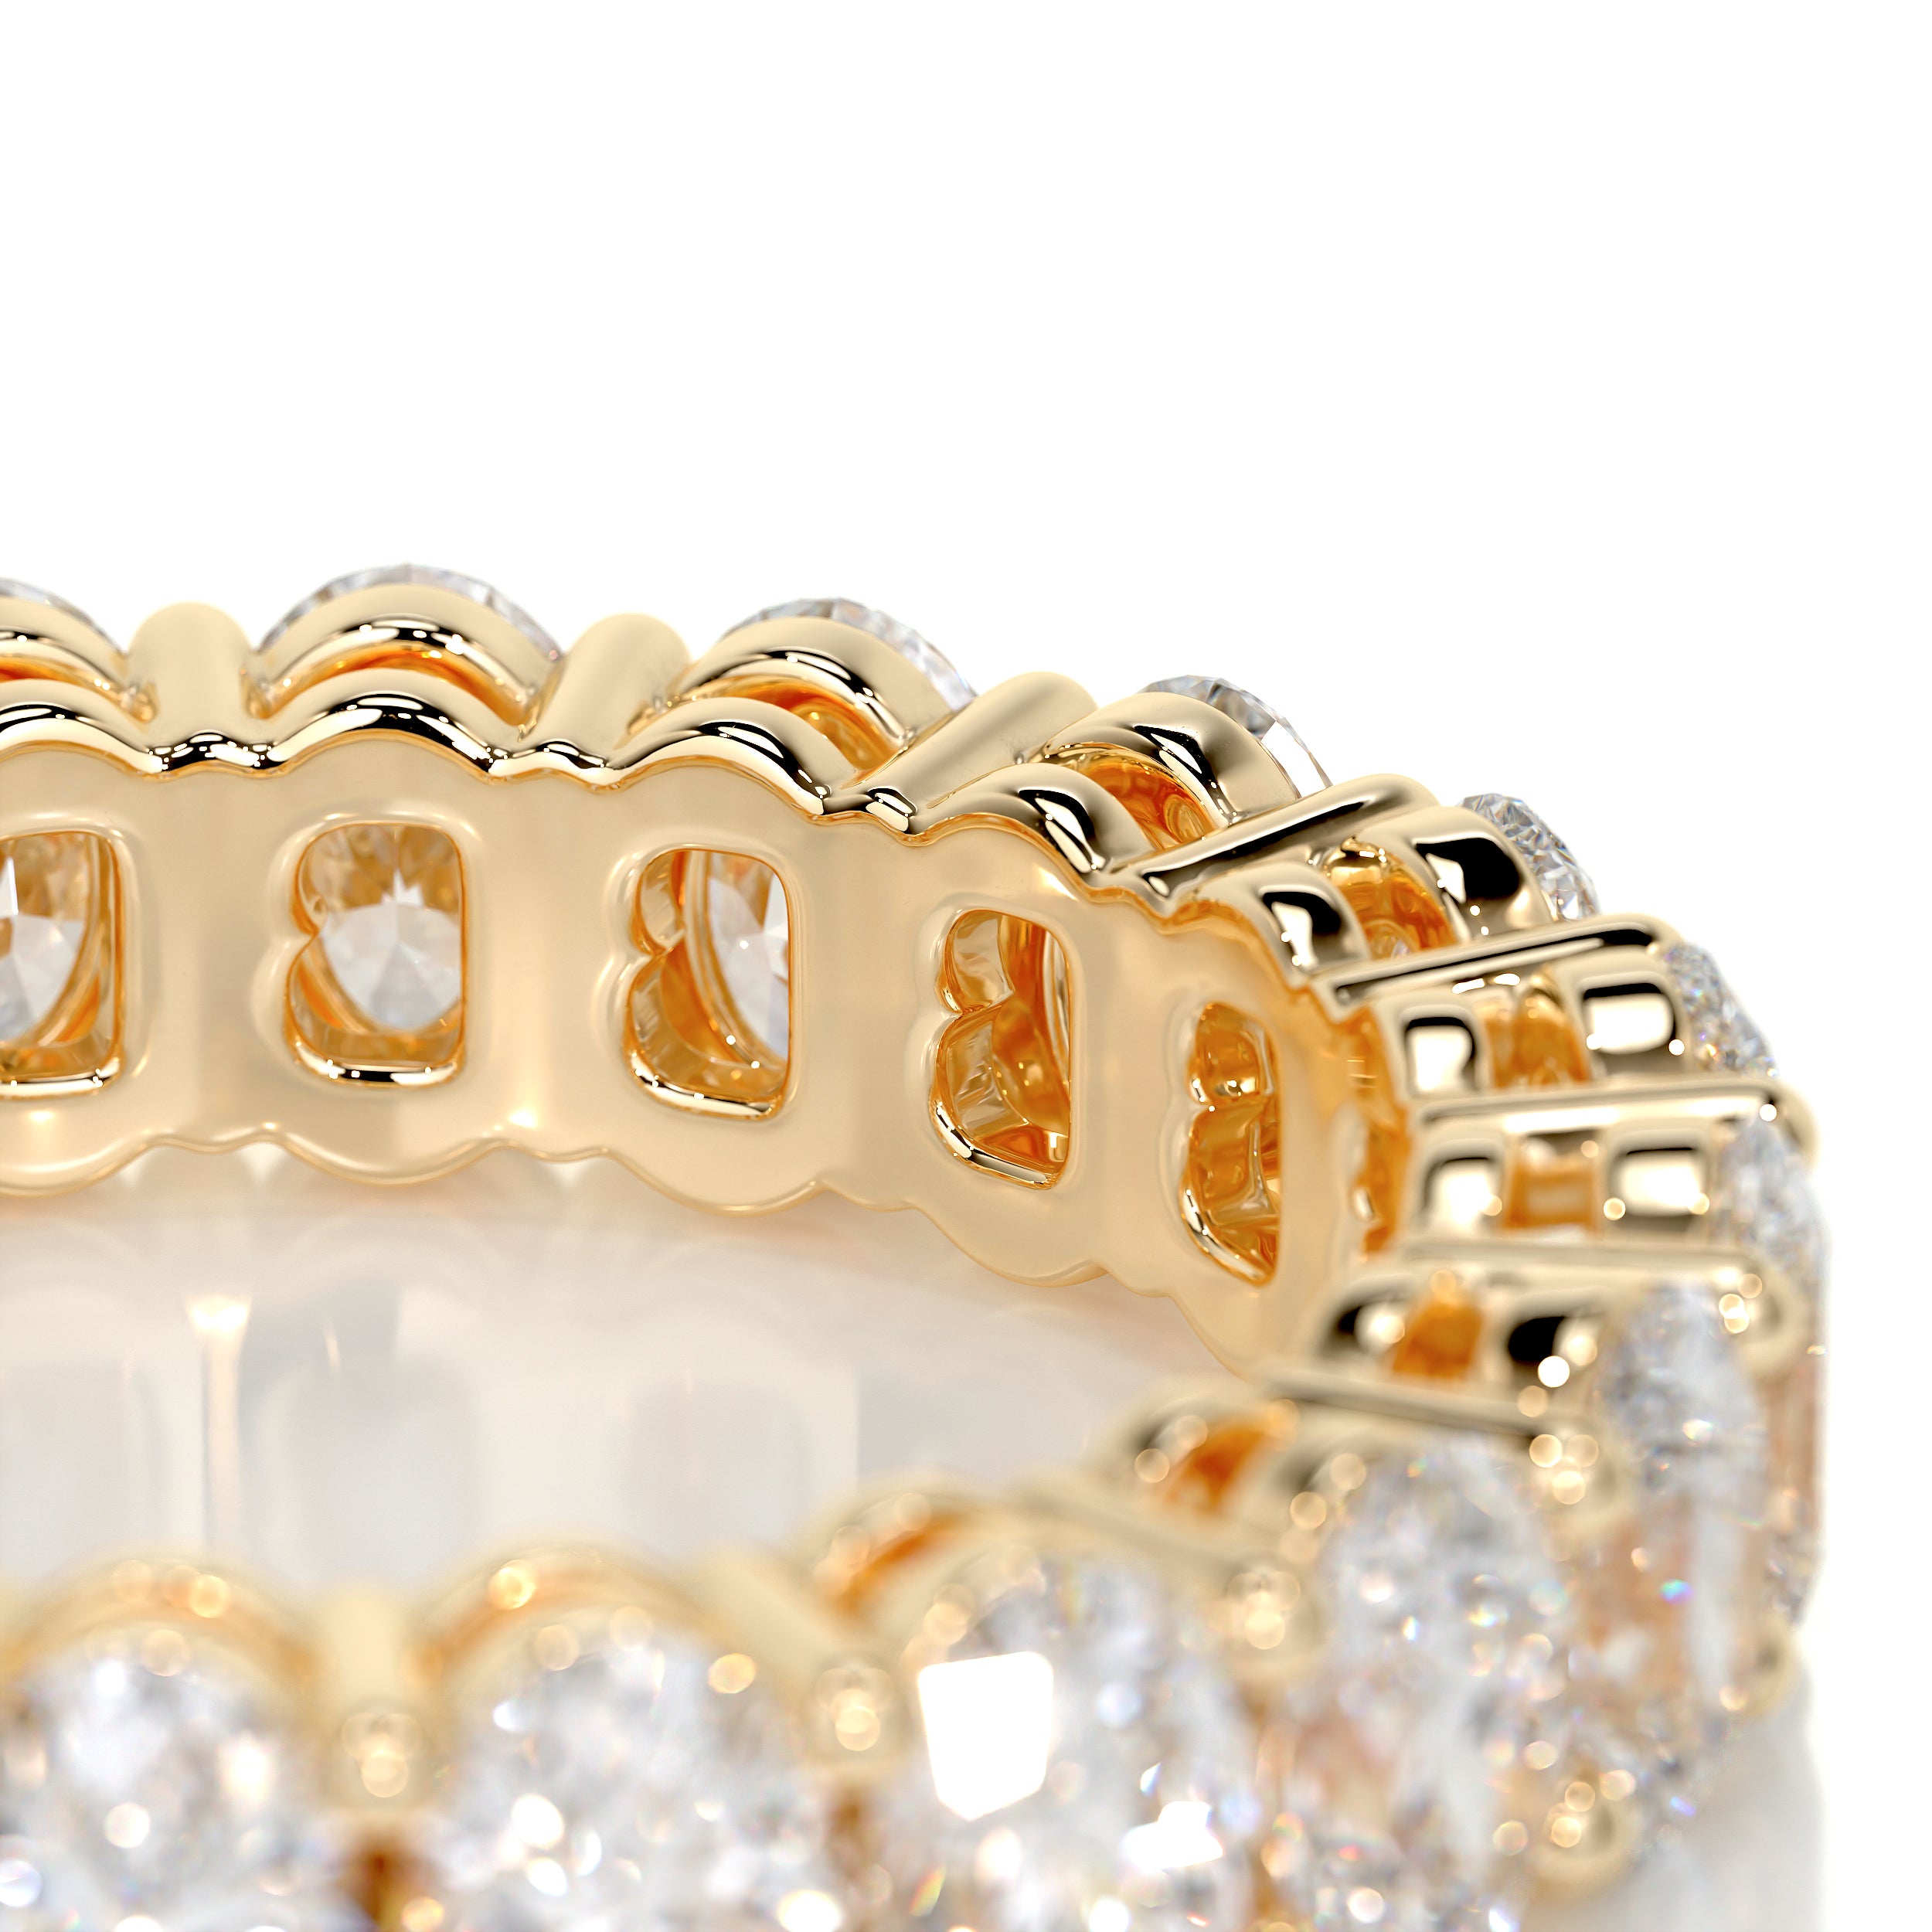 Julia Diamond Wedding Ring   (3.5 Carat) -18K Yellow Gold